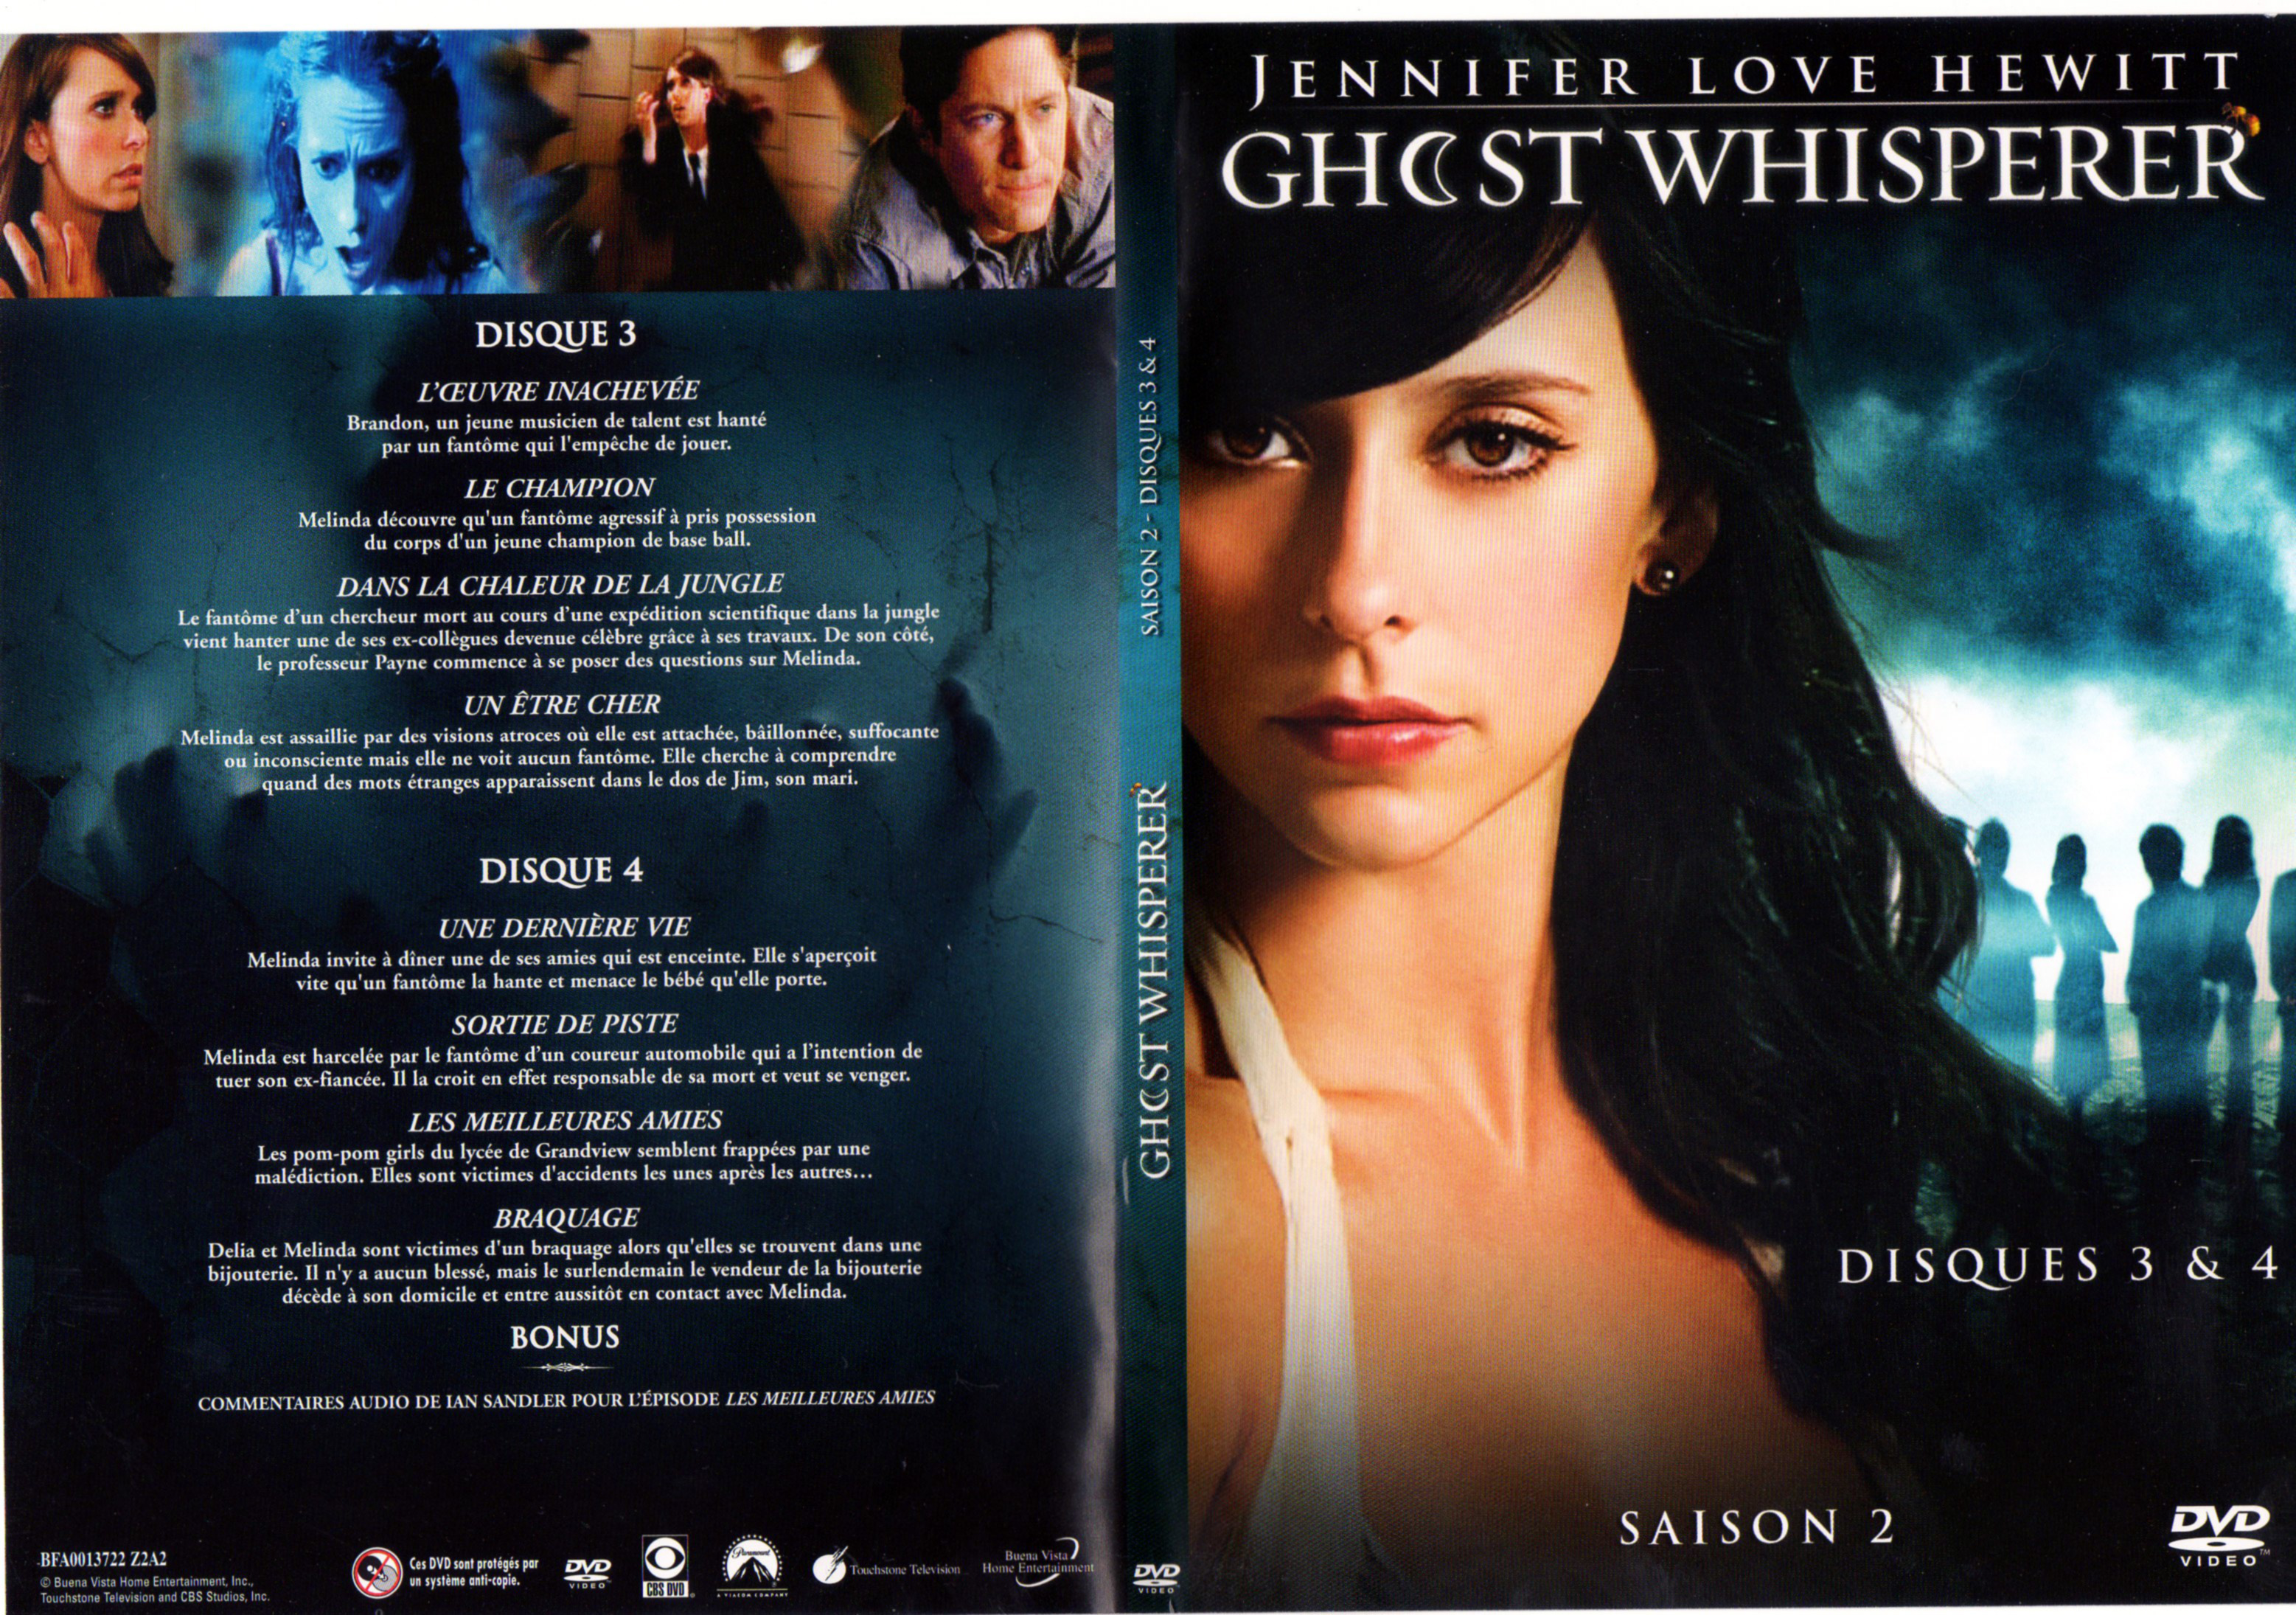 Jaquette DVD Ghost whisperer Saison 2 DVD 2